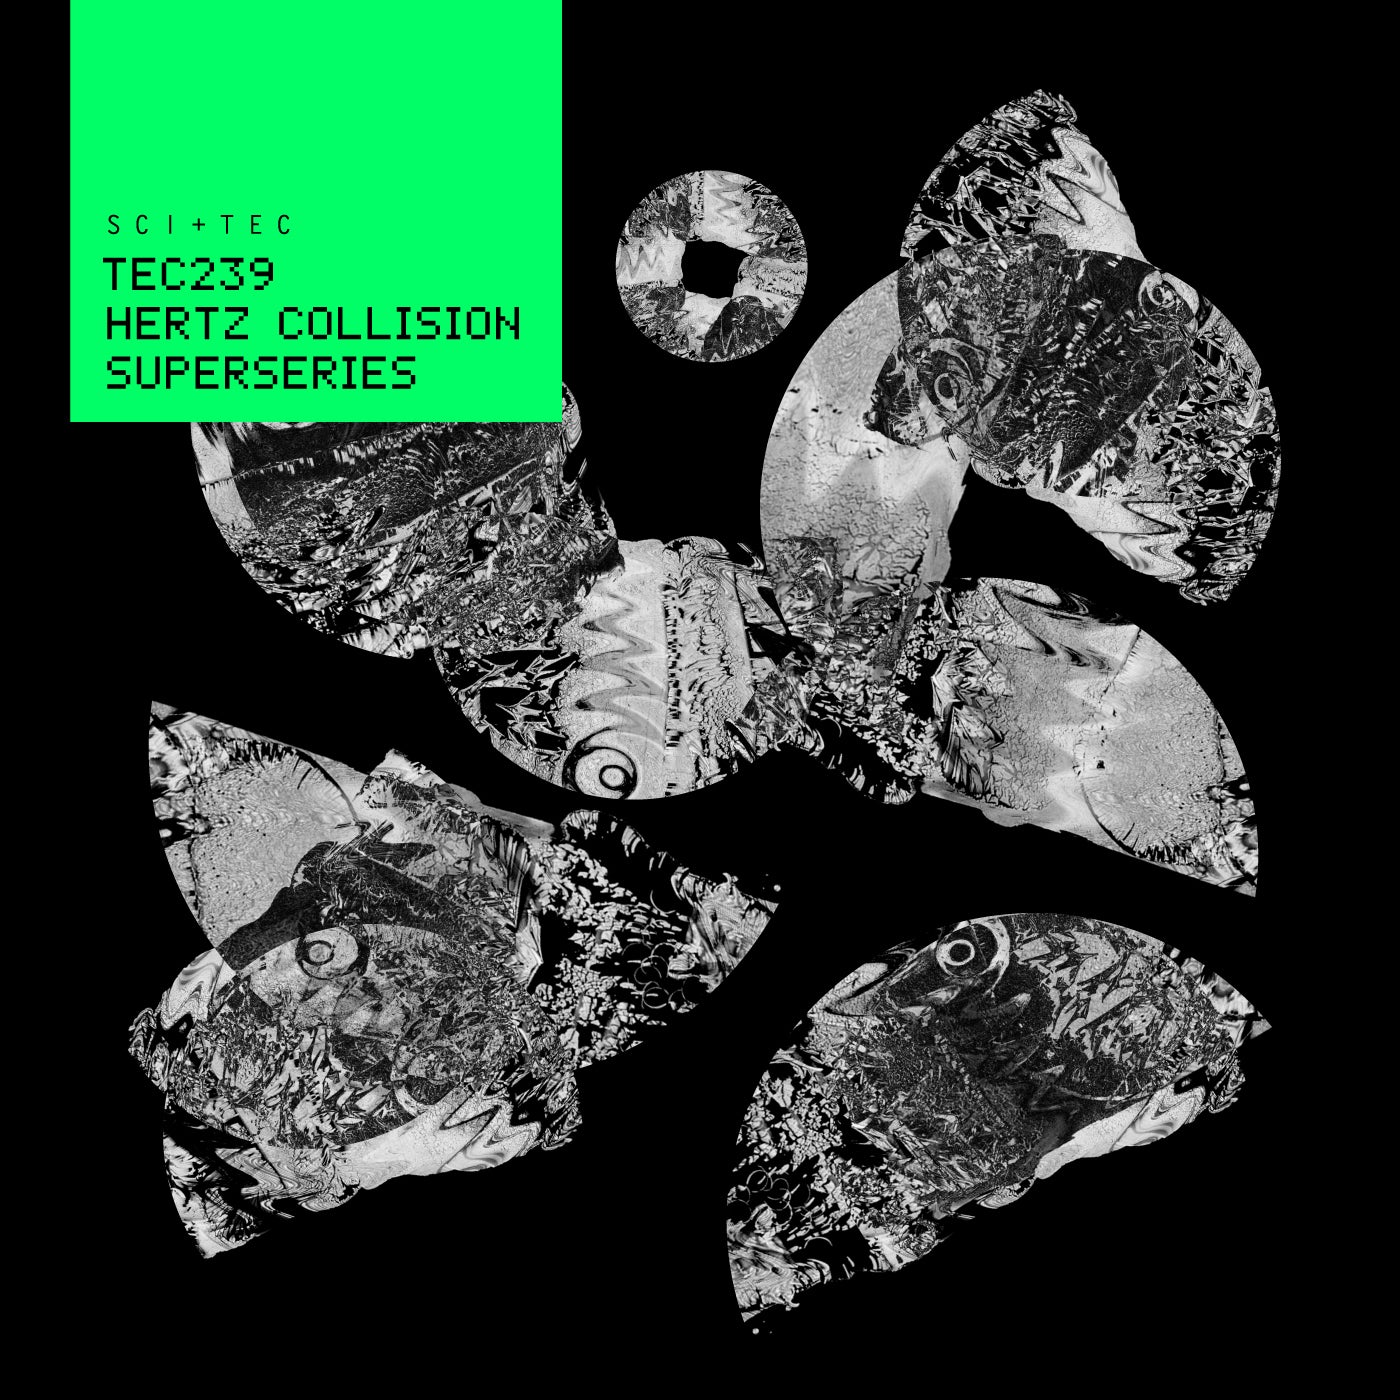 Hertz Collision – Superseries [TEC239BP]